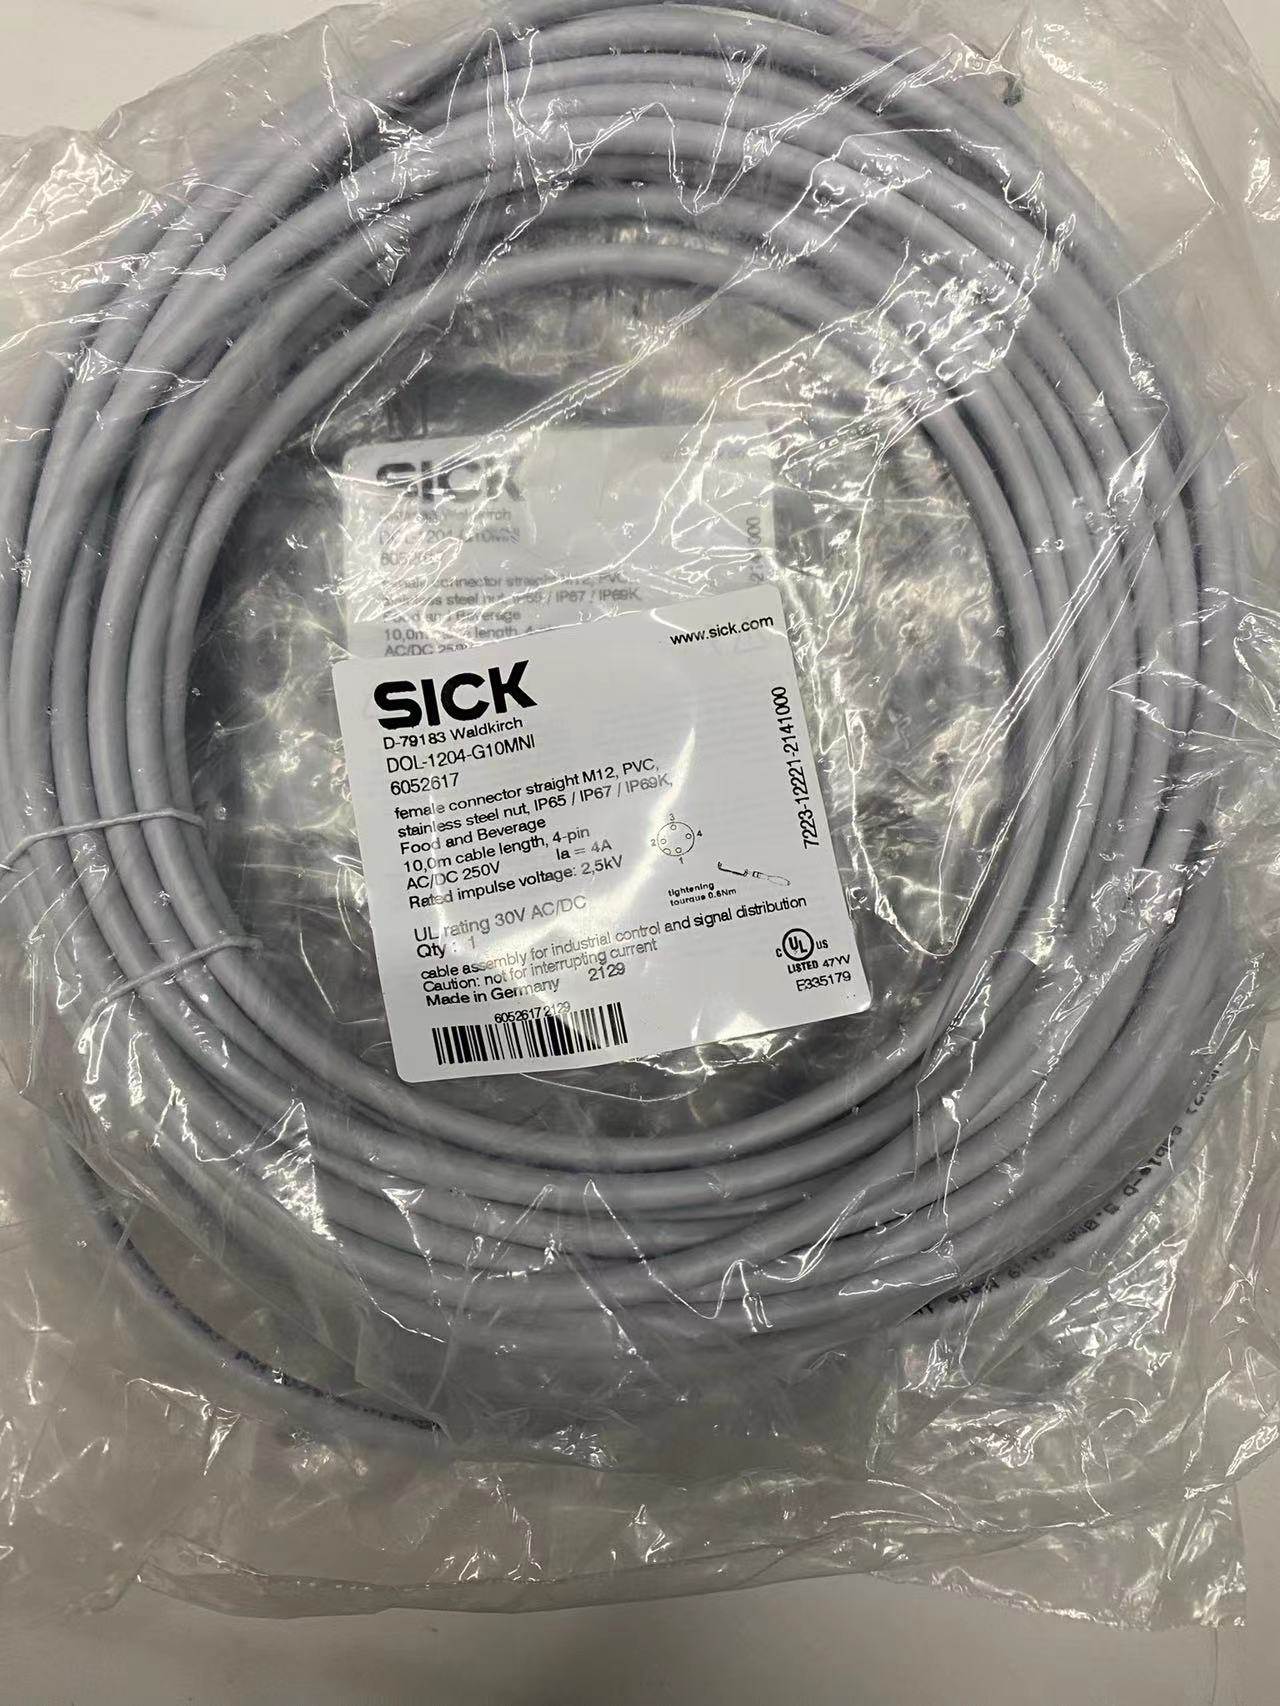 优价Sick西克电缆线 DOL-1204-G10MNI原装正品询价